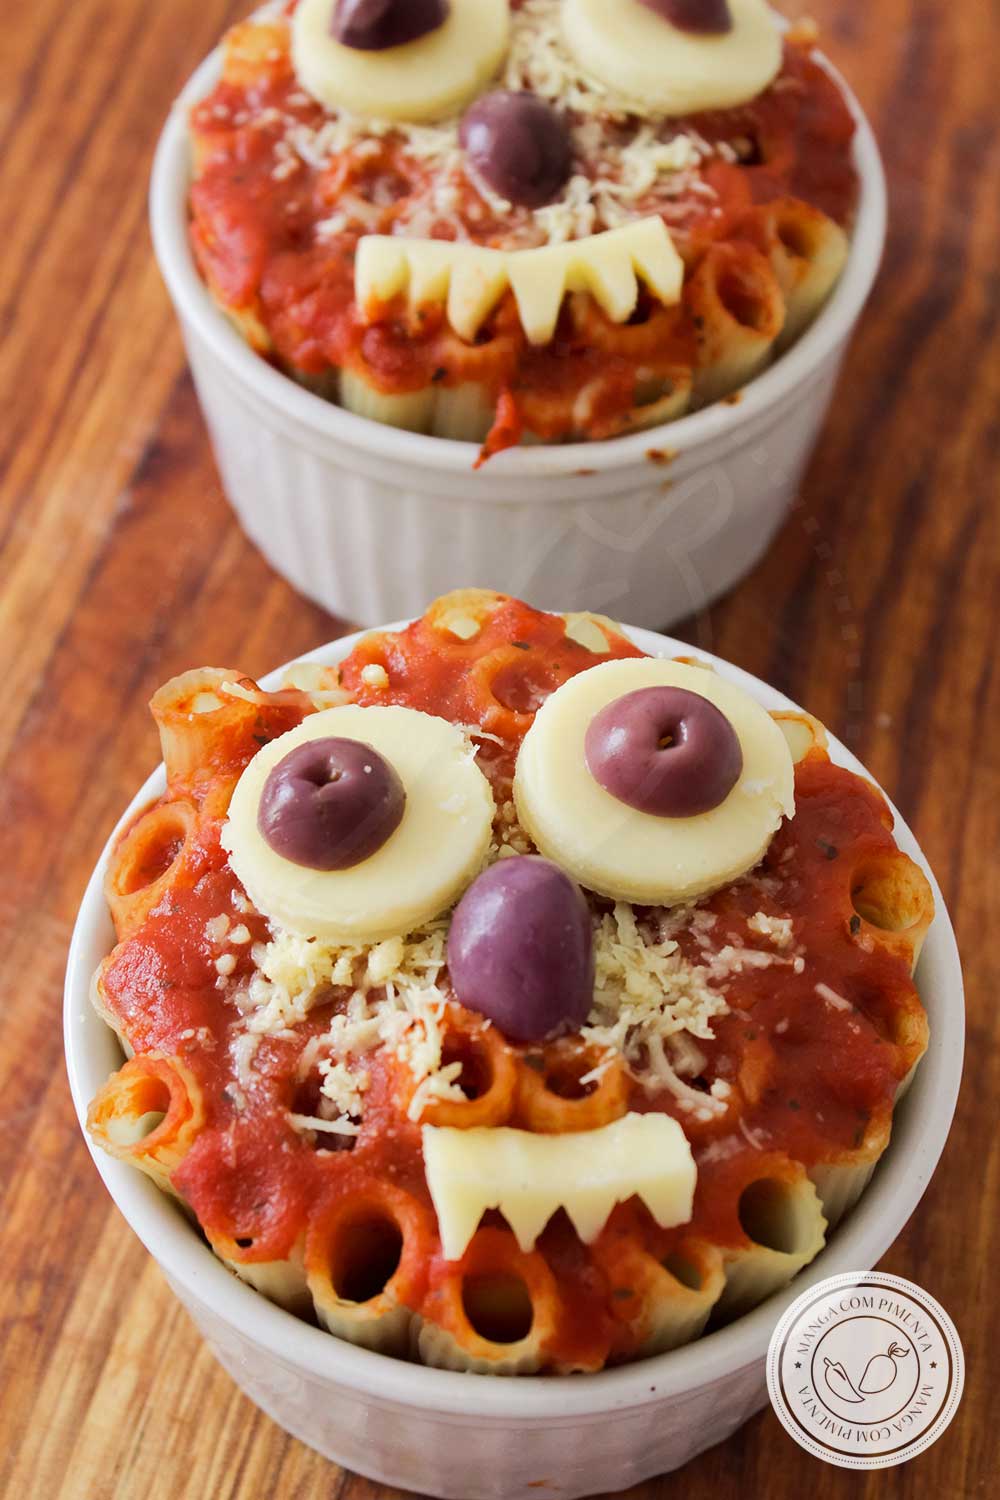 Receita de Macarrão Monstro para o Halloween - prepare algo gostoso para a criançada!